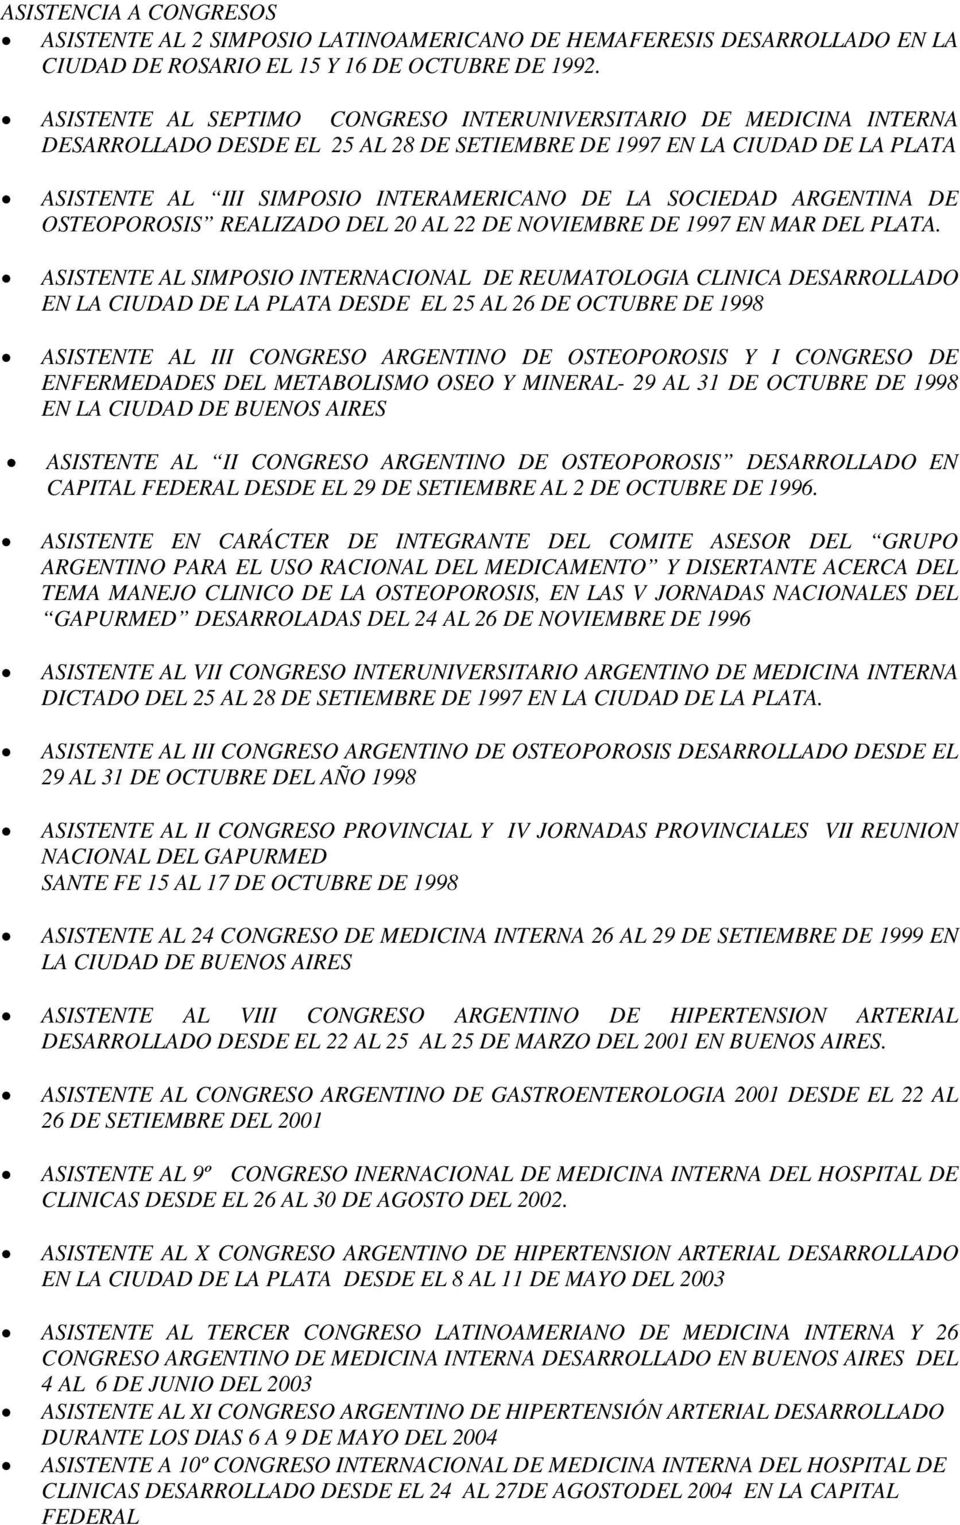 SOCIEDAD ARGENTINA DE OSTEOPOROSIS REALIZADO DEL 20 AL 22 DE NOVIEMBRE DE 1997 EN MAR DEL PLATA.